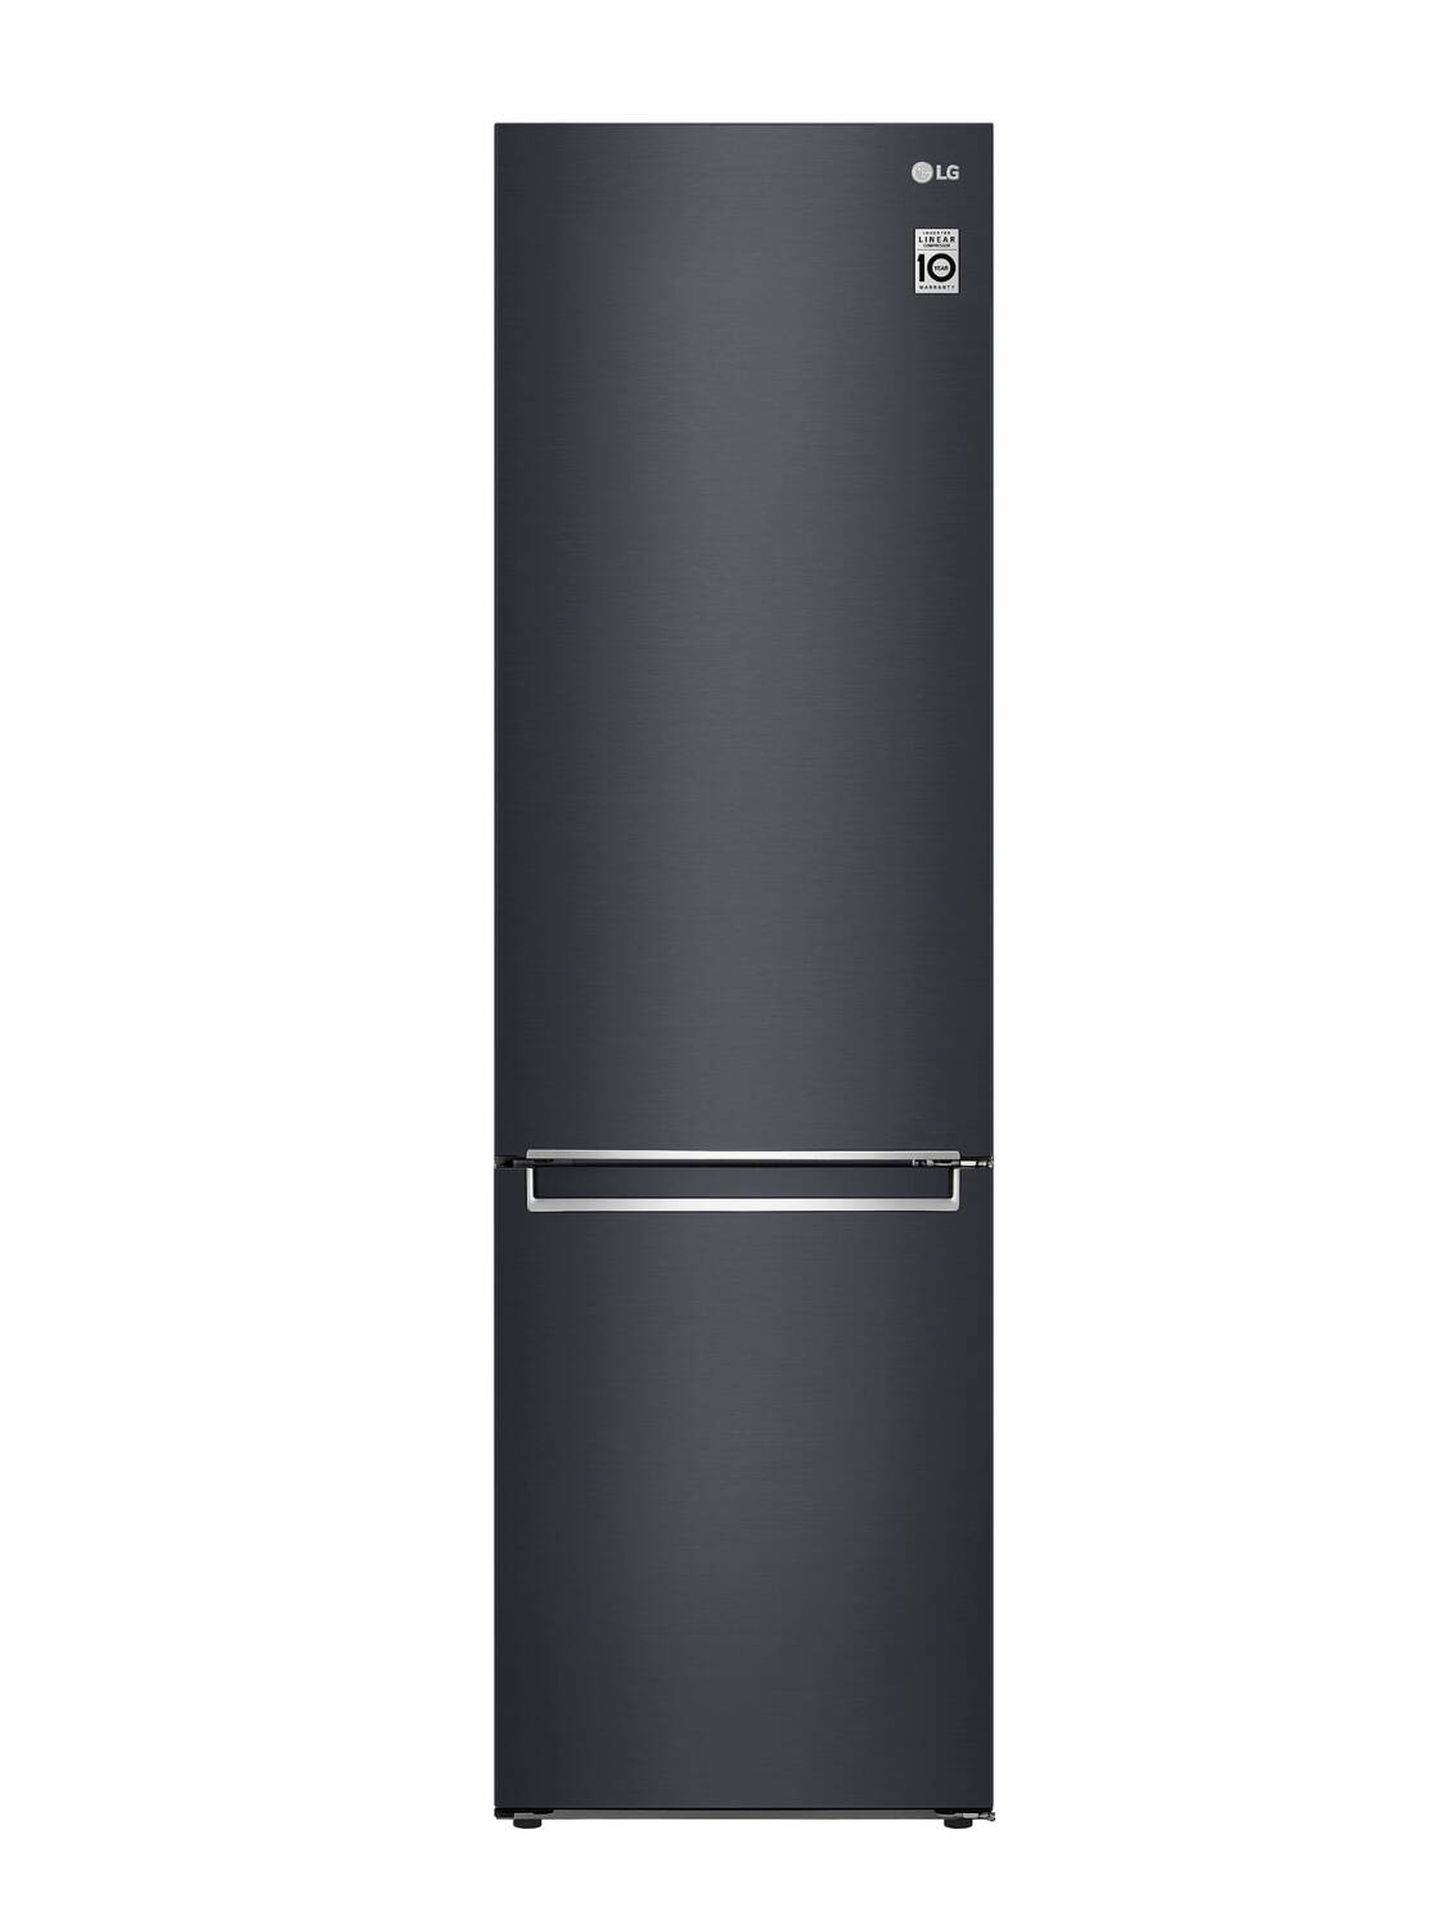 El nuevo frigorífico Bottom Freezer presentado por LG en la IFA 2023. (Cortesía)